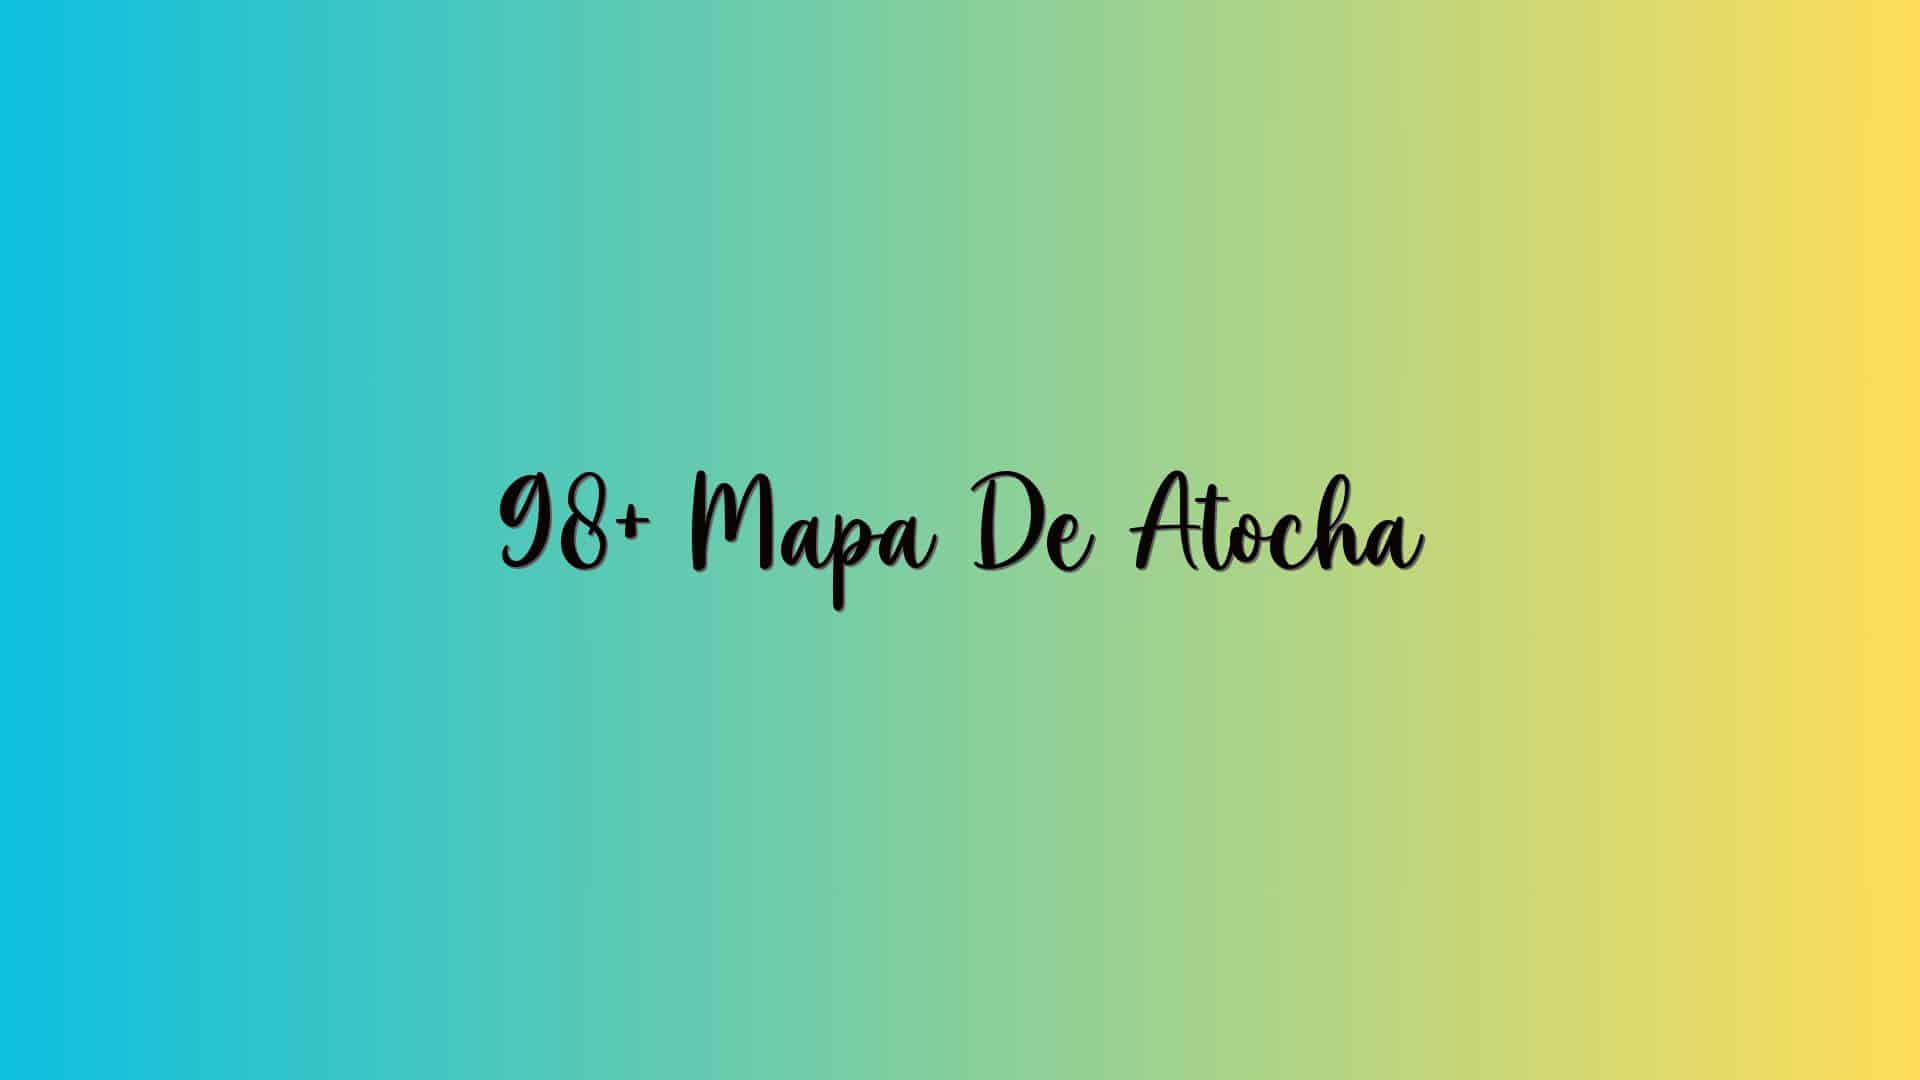 98+ Mapa De Atocha